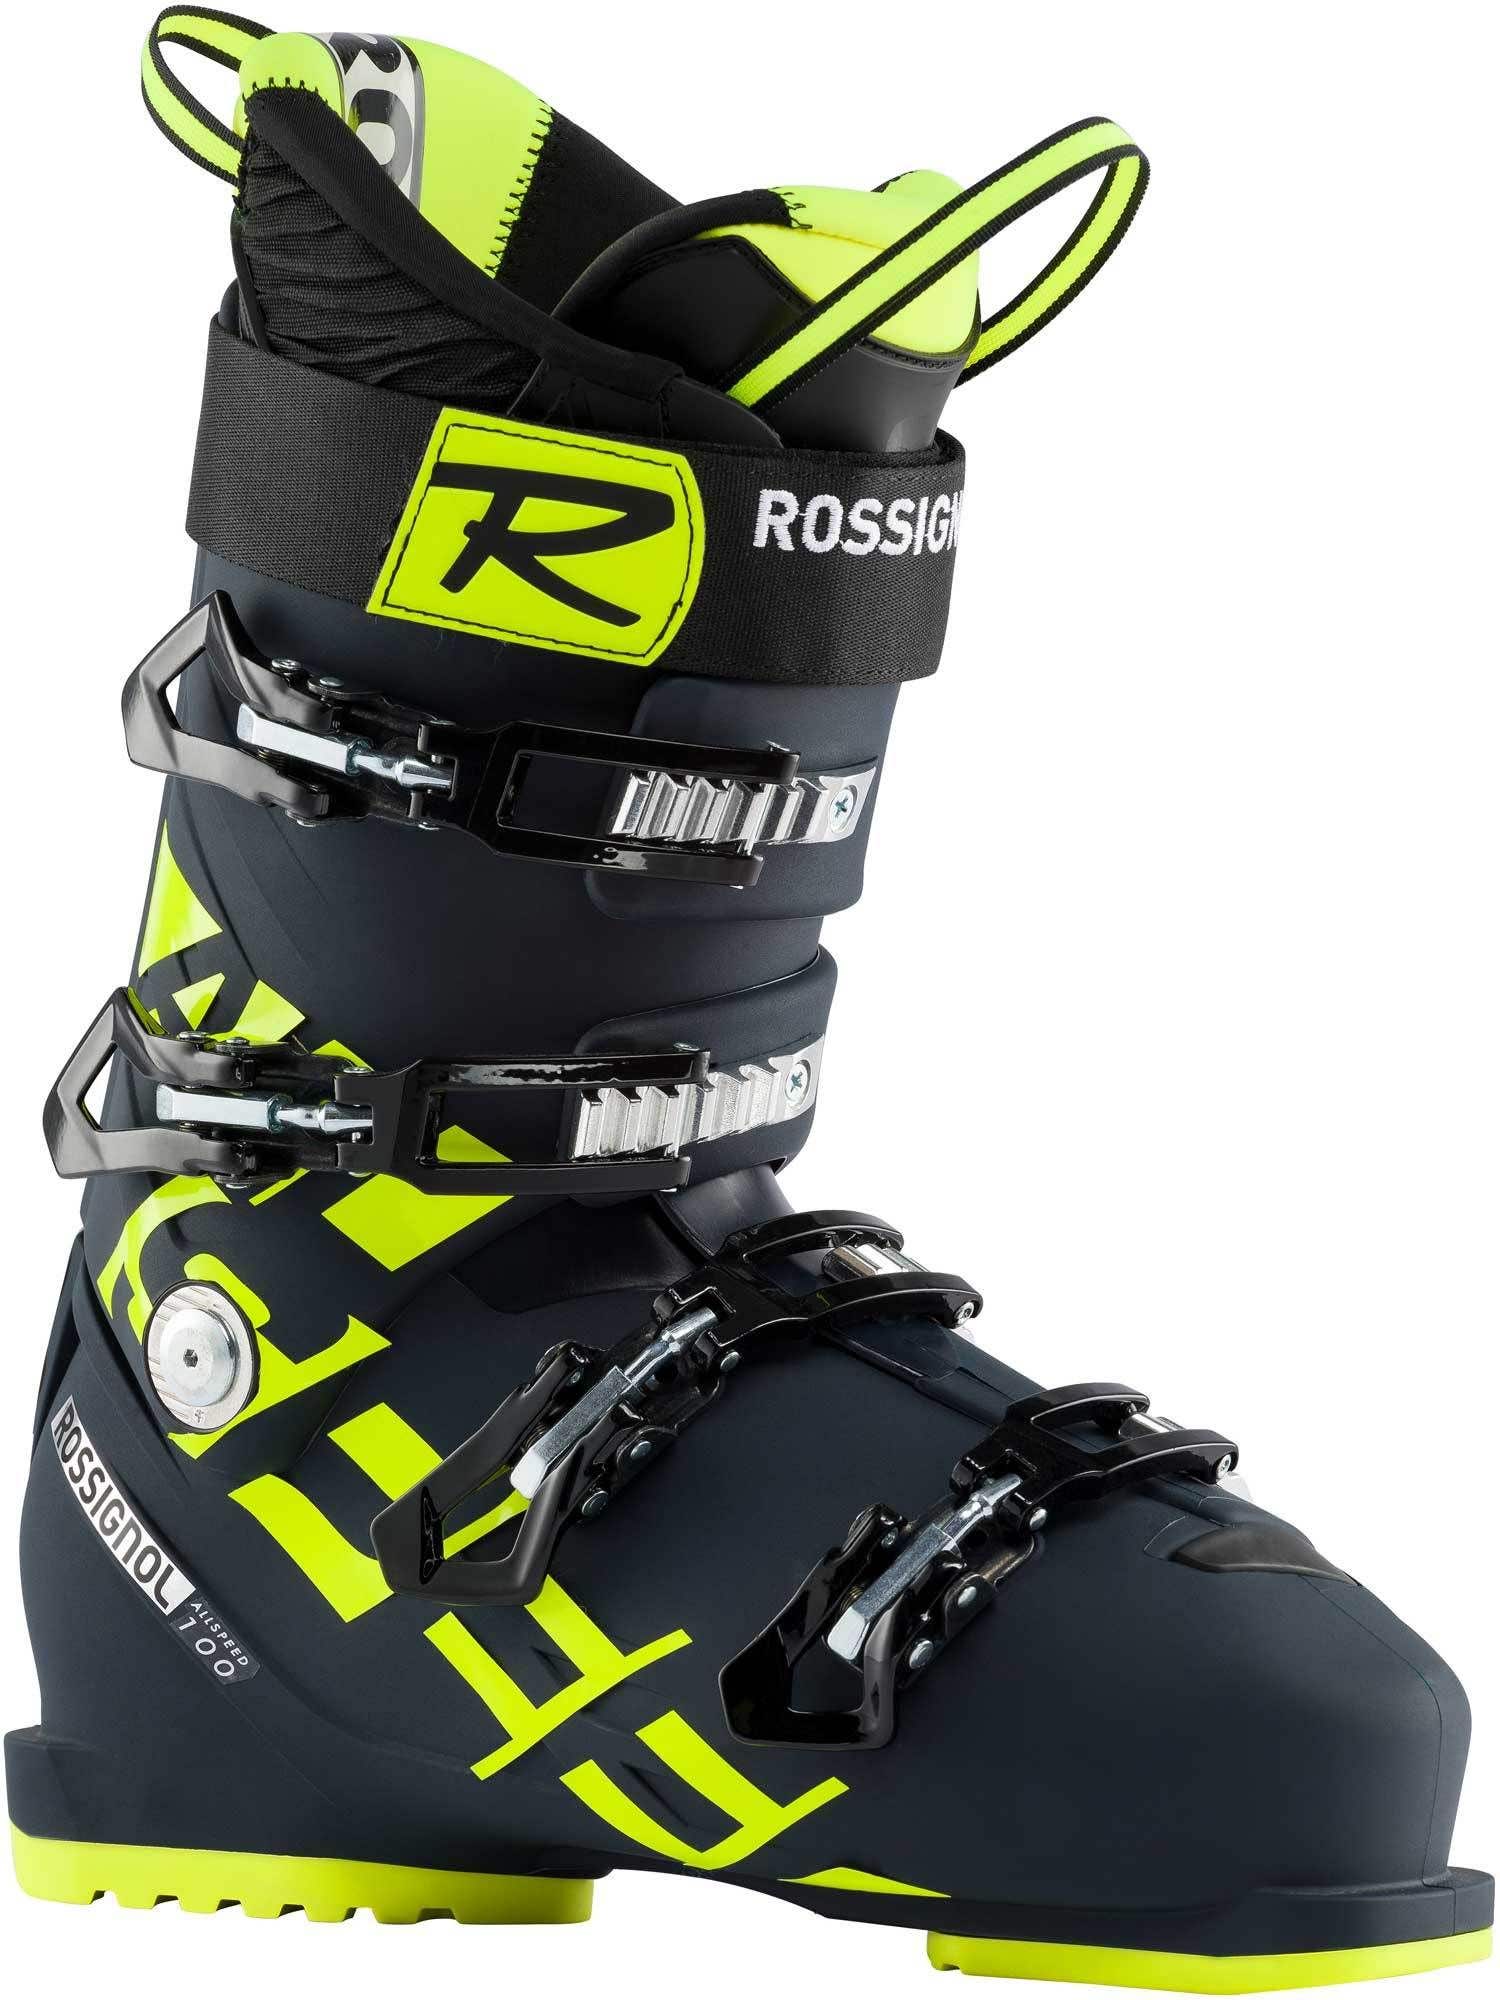 Rossignol ski boots ALLSPEED 100 - DARK/BLUE